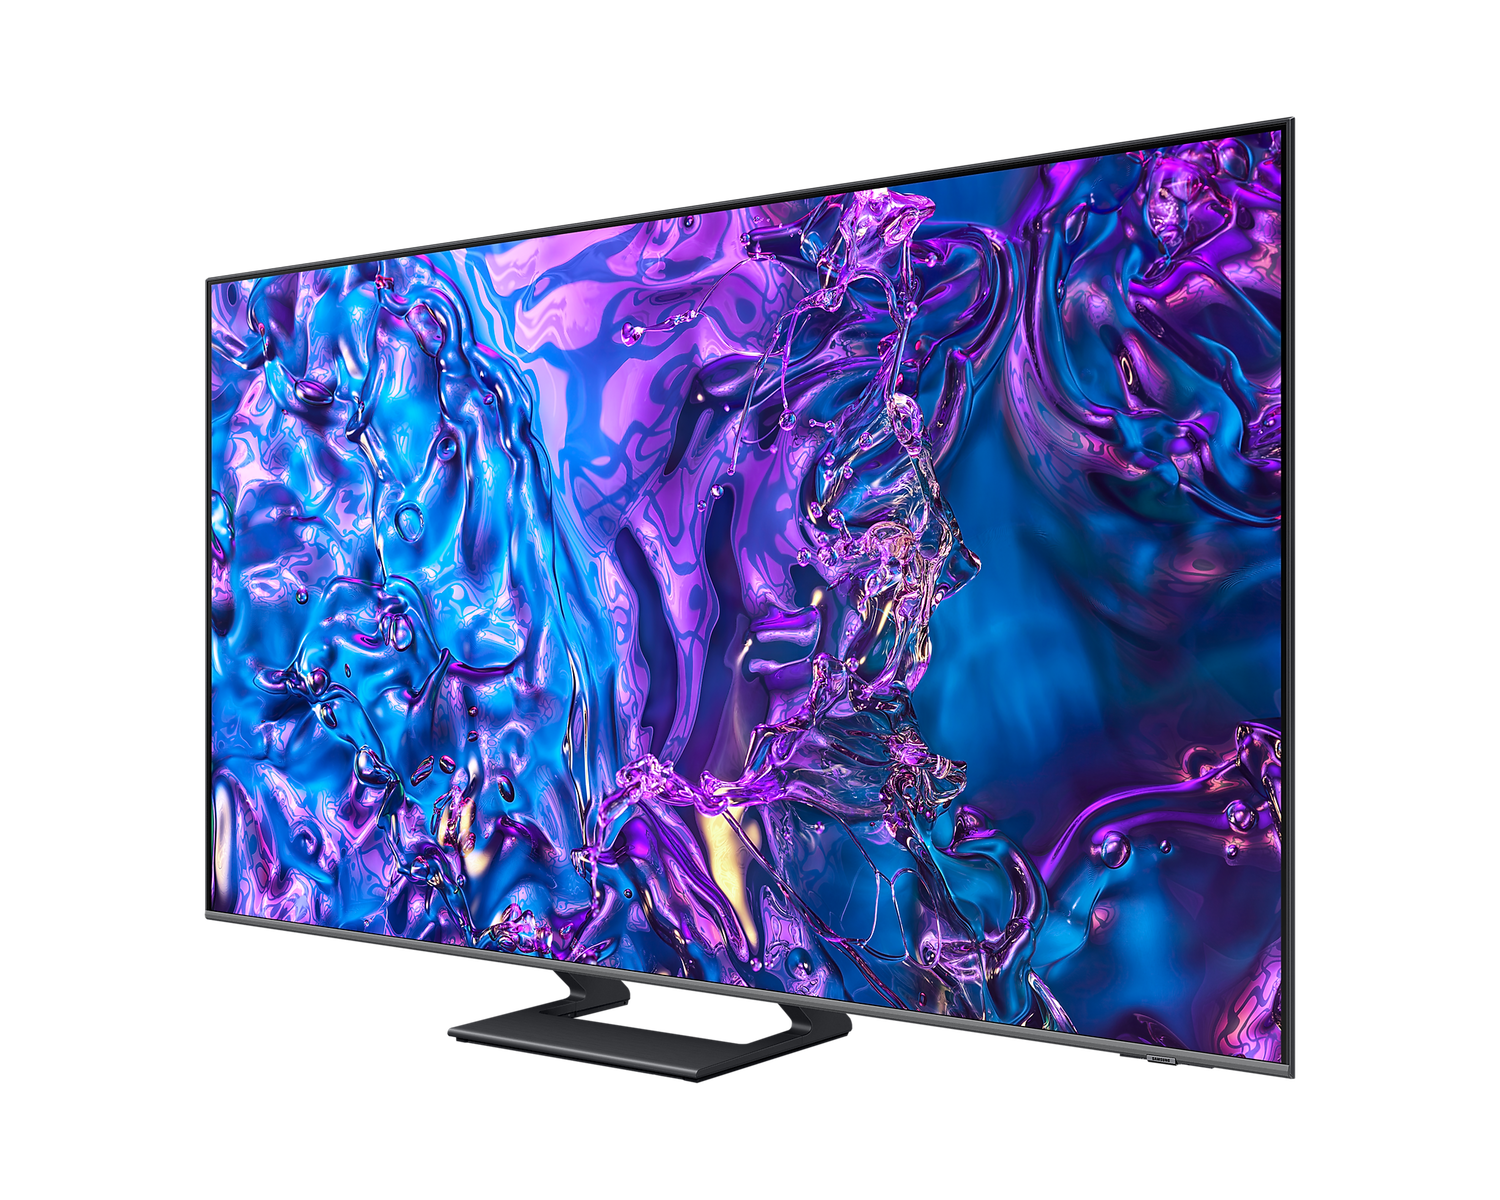 Samsung QE65Q73DATXXN smart televisie